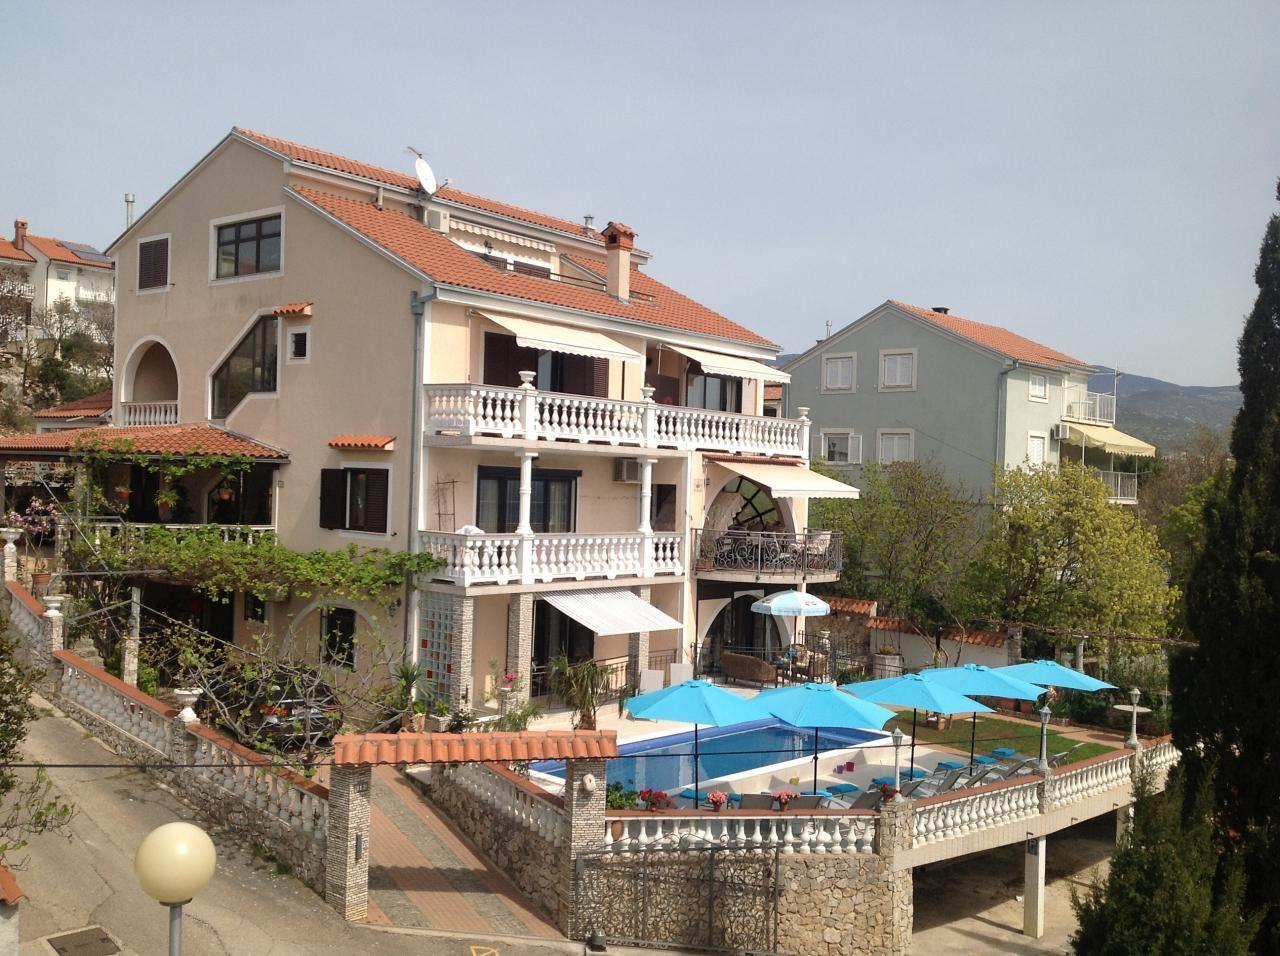 Schönes Appartement in Novi Vinodolski mit ge Ferienhaus in Kroatien